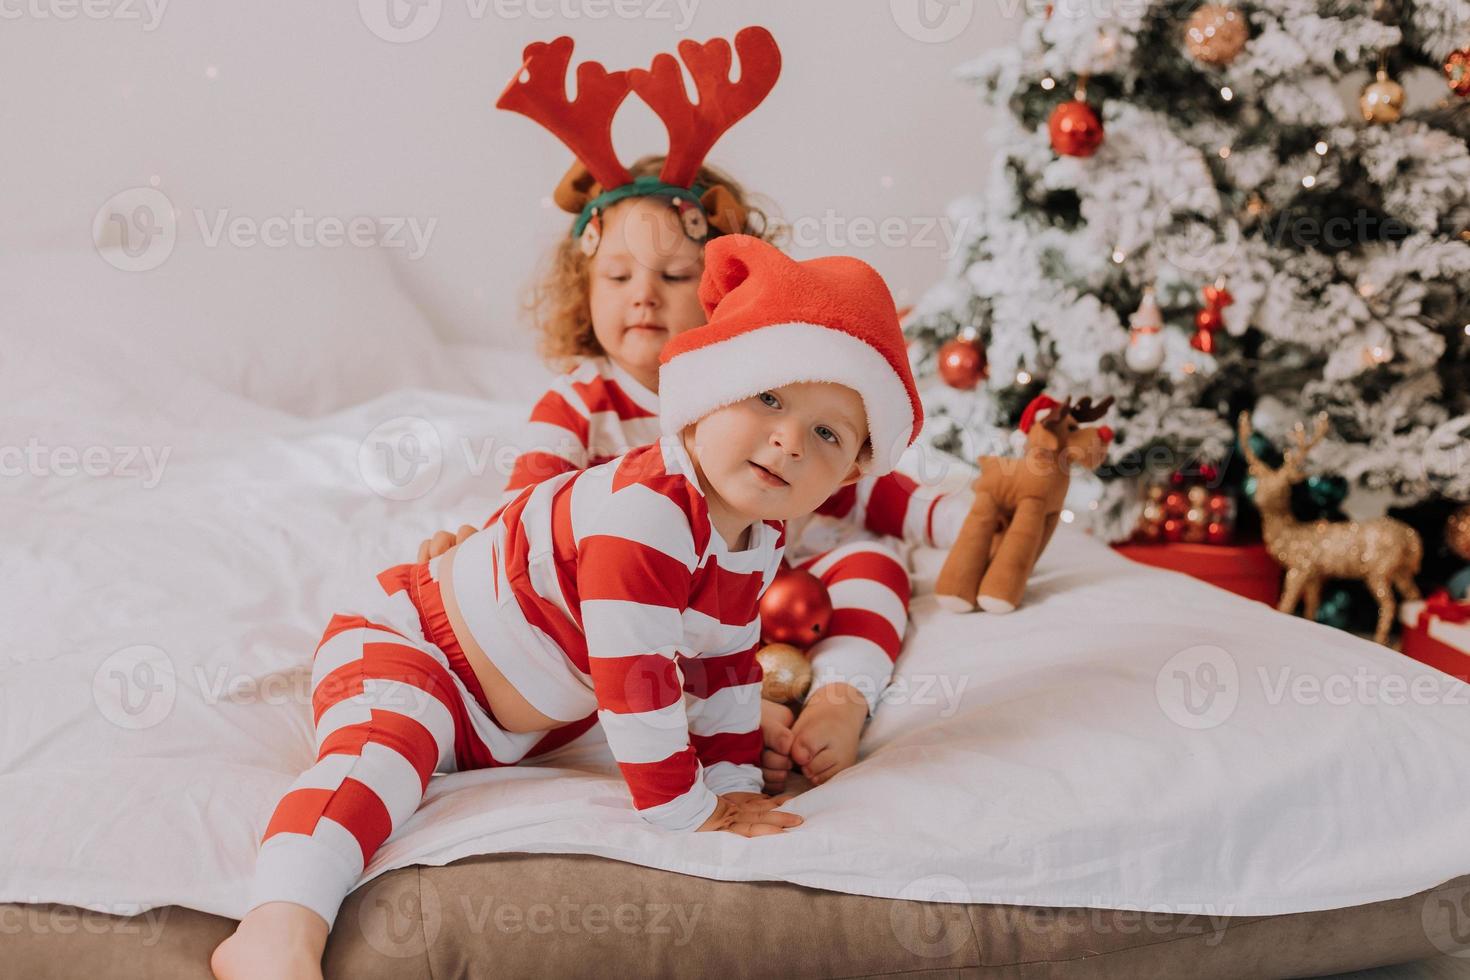 crianças de pijama vermelho e branco comem doces de natal sentados na cama. irmão e irmã, menino e menina compartilham presentes. manha de Natal. estilo de vida. espaço para texto. foto de alta qualidade